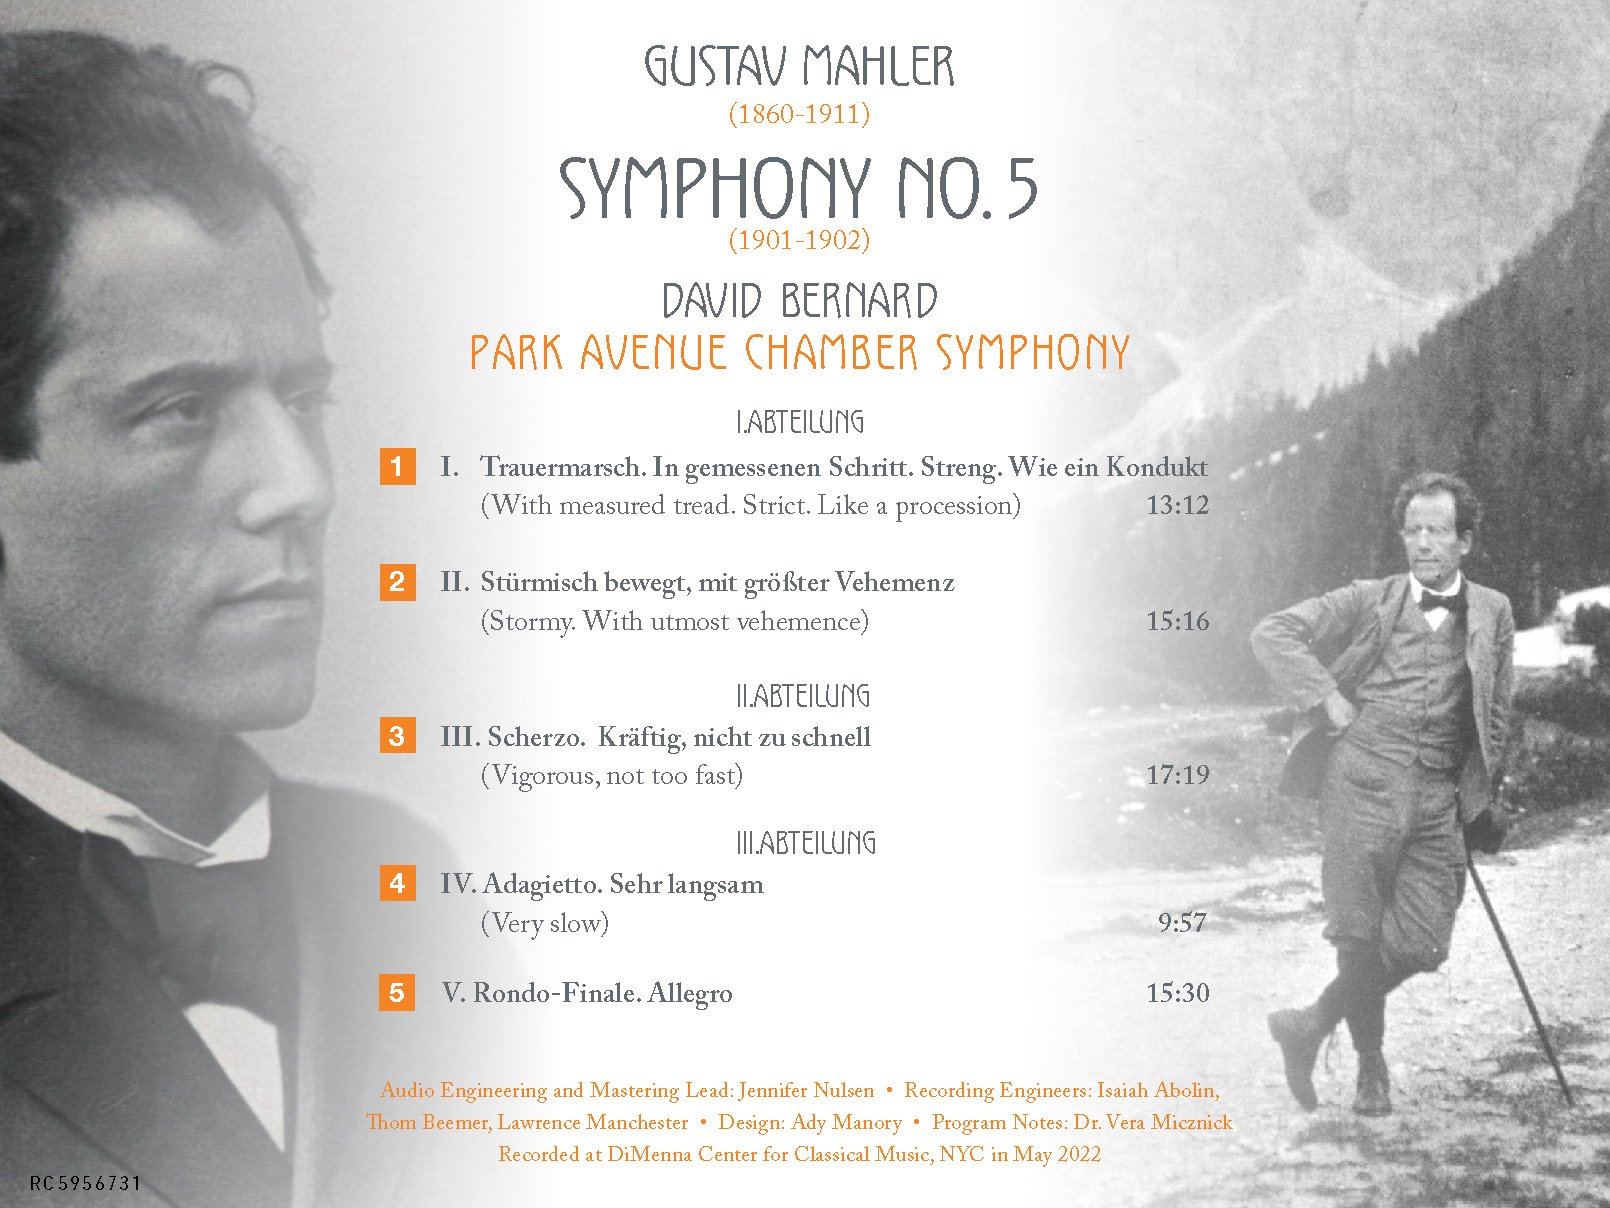 Recursive Classics - Mahler Symphony No. 5 - RC5956731 Digital Booklet_Page_02.jpg